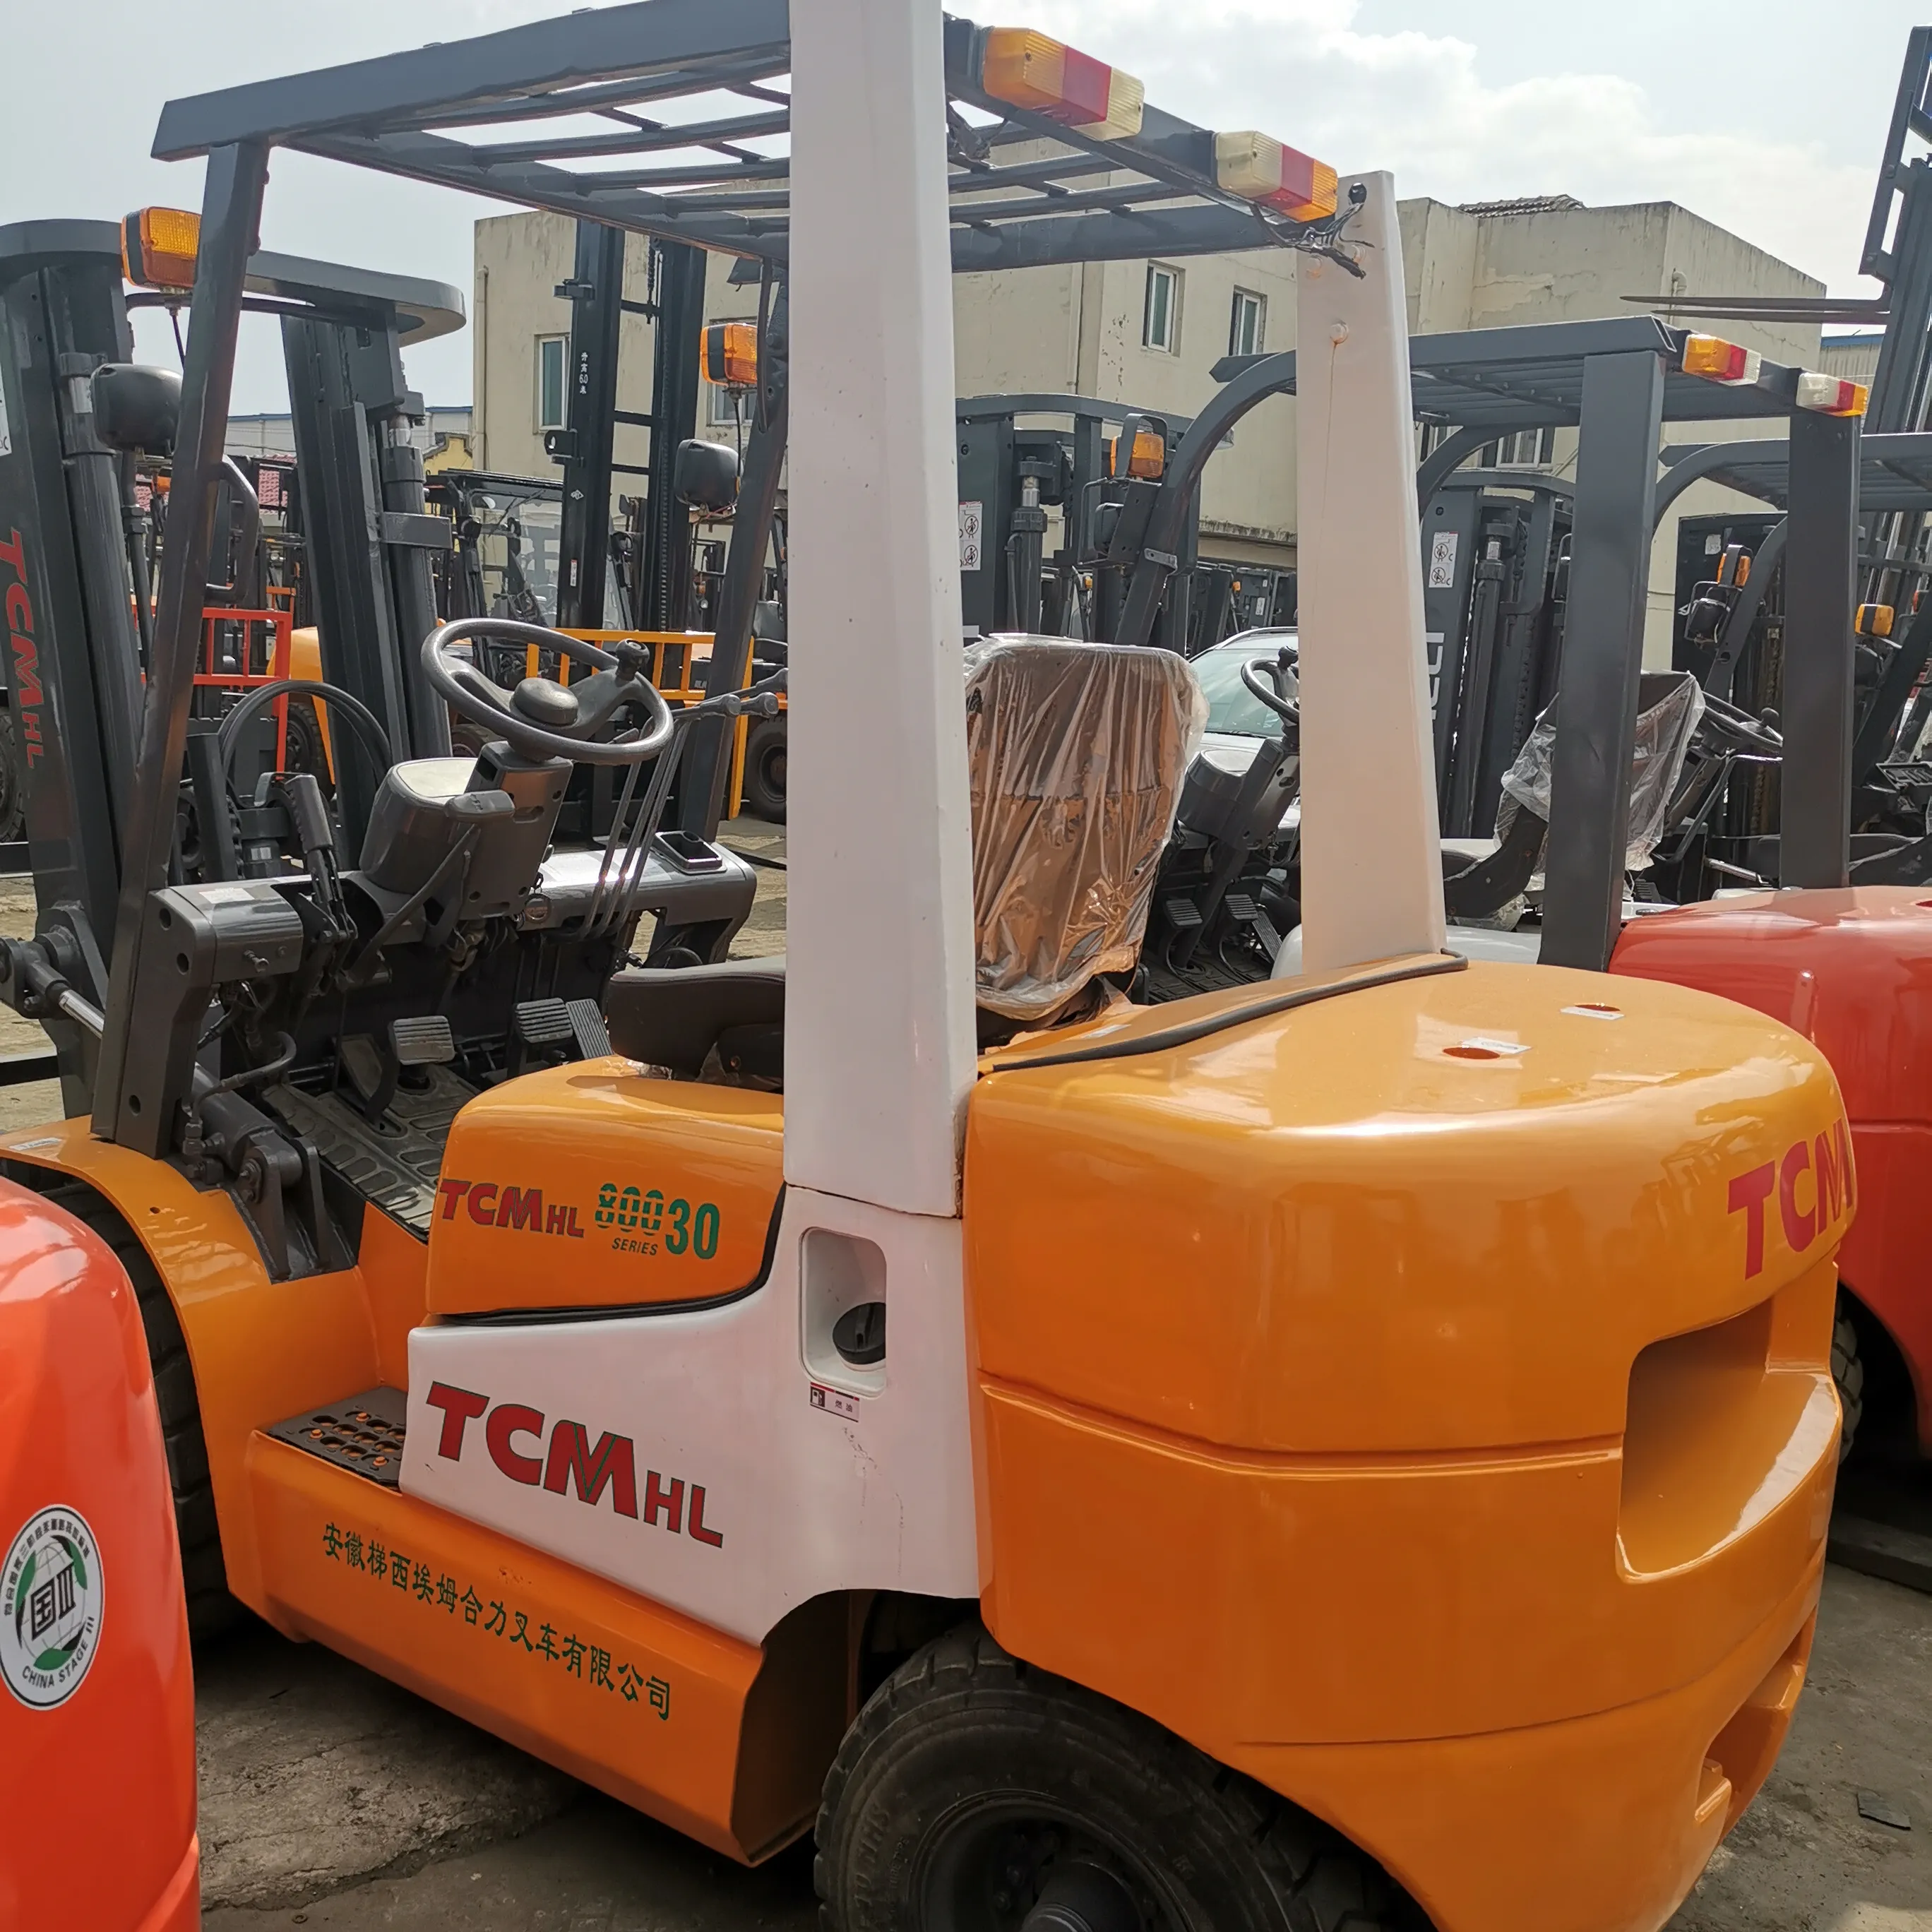 TCM-HL dengan Lampiran Pakai Tangan Mesin Forklift Elektrik Truk Manual Hangcha dengan Peralatan & Suku Cadang Forklift Harga Murah